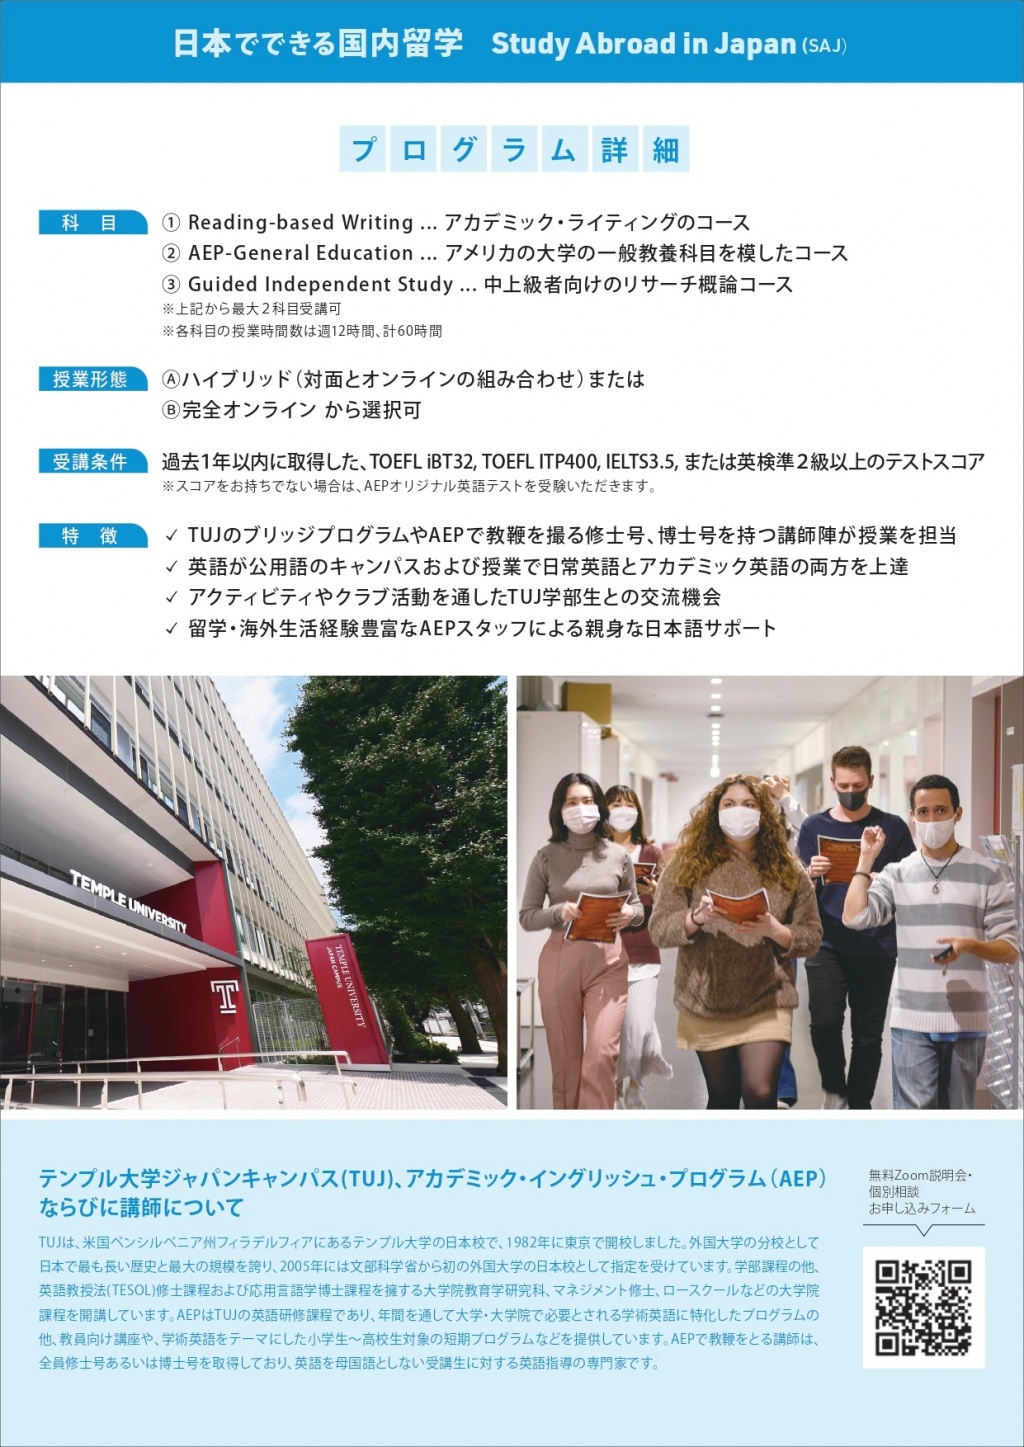 【最新版】2022年春学期AEP昼間講座 (日本でできる国内留学プログラム) P2